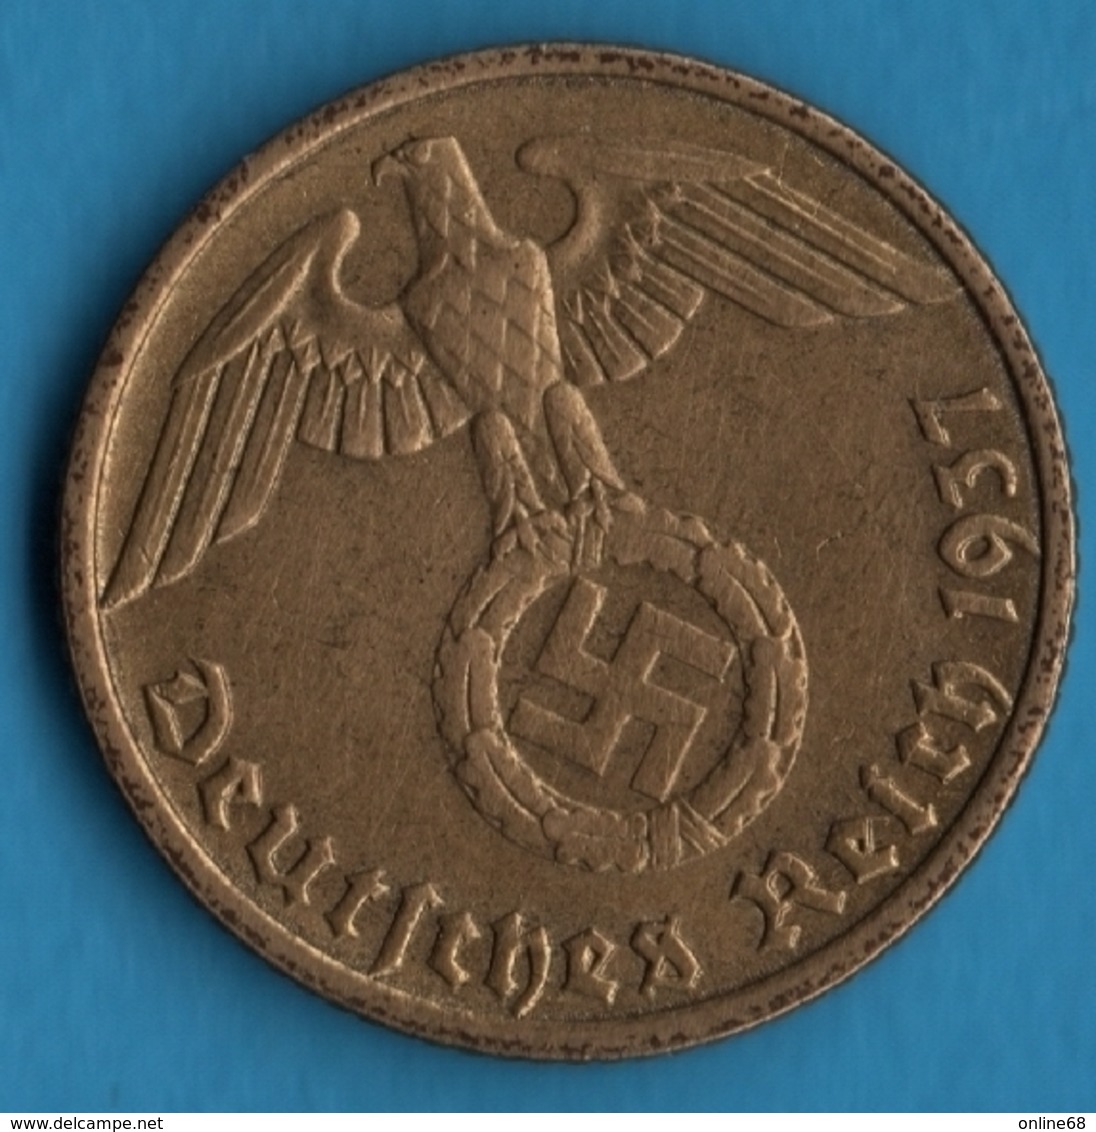 DEUTSCHES REICH 10 REICHSPFENNIG 1937 J KM# 92 (svastika) - 10 Reichspfennig